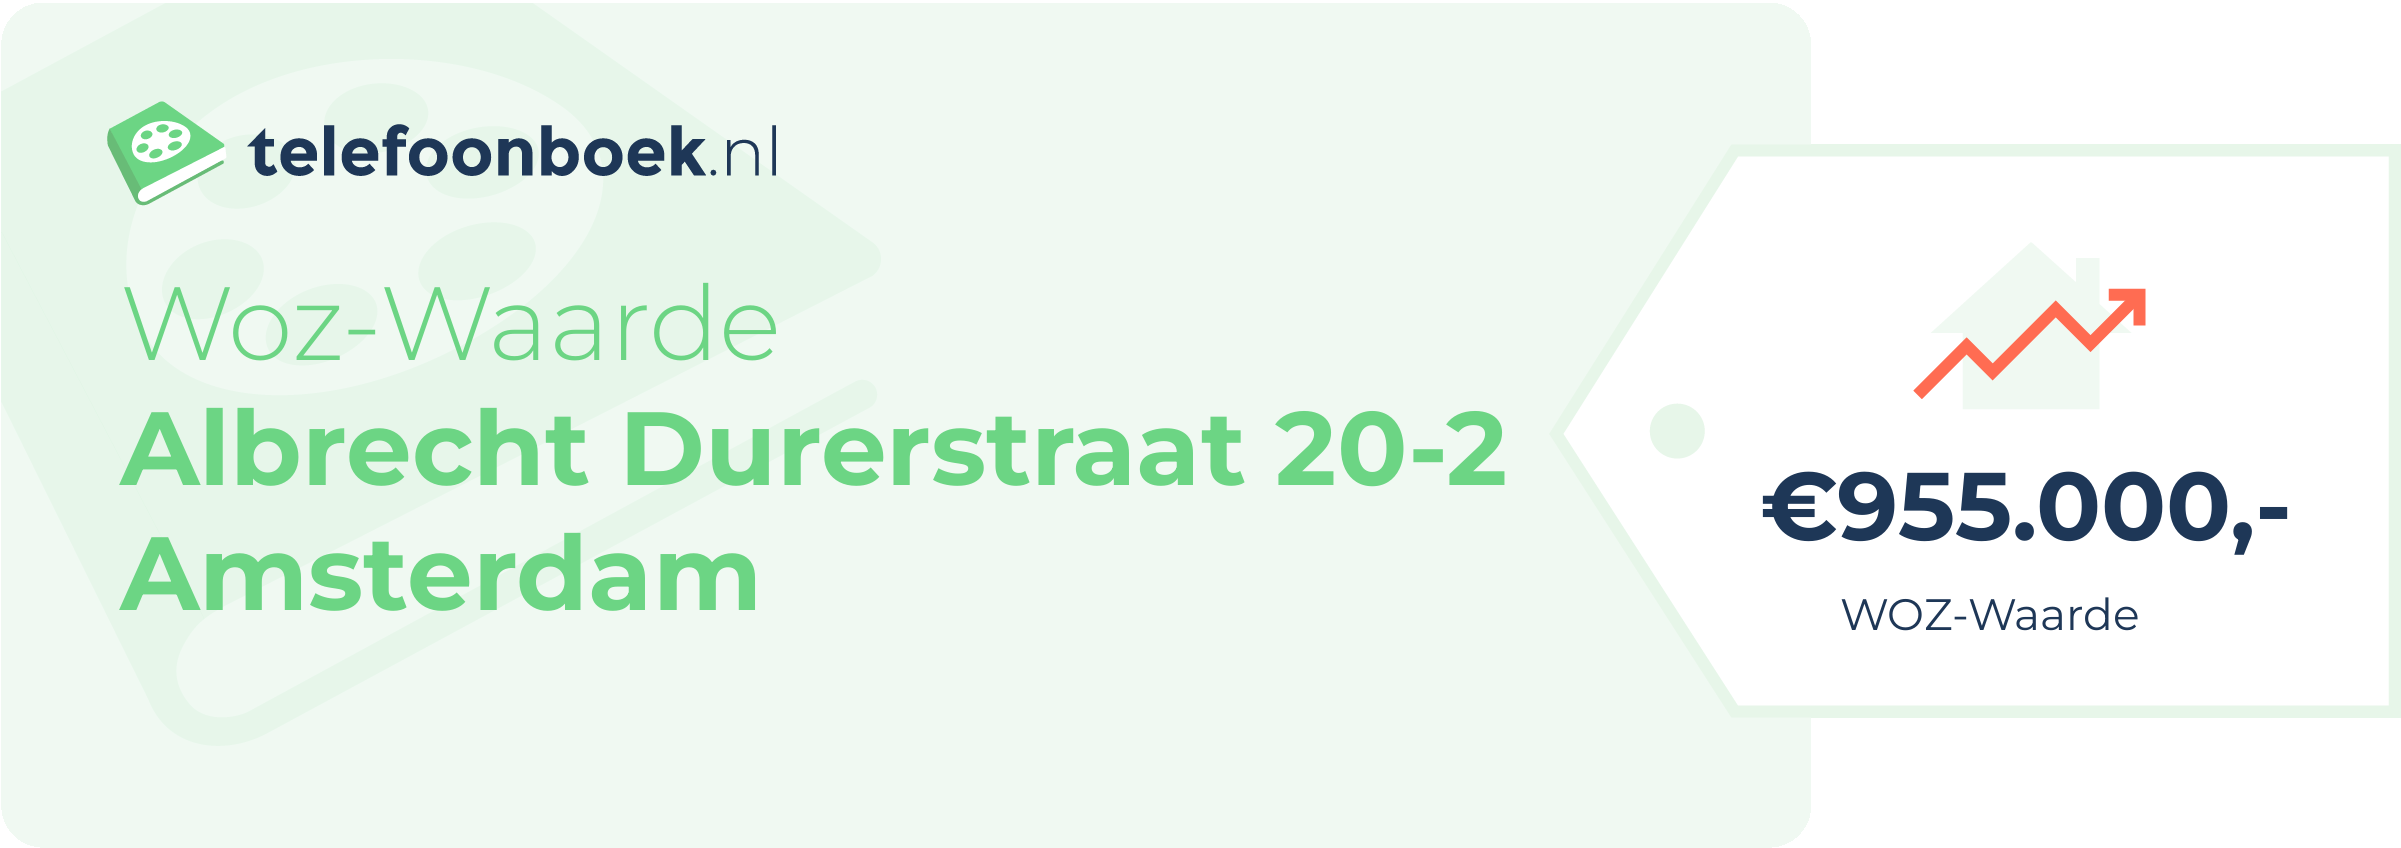 WOZ-waarde Albrecht Durerstraat 20-2 Amsterdam